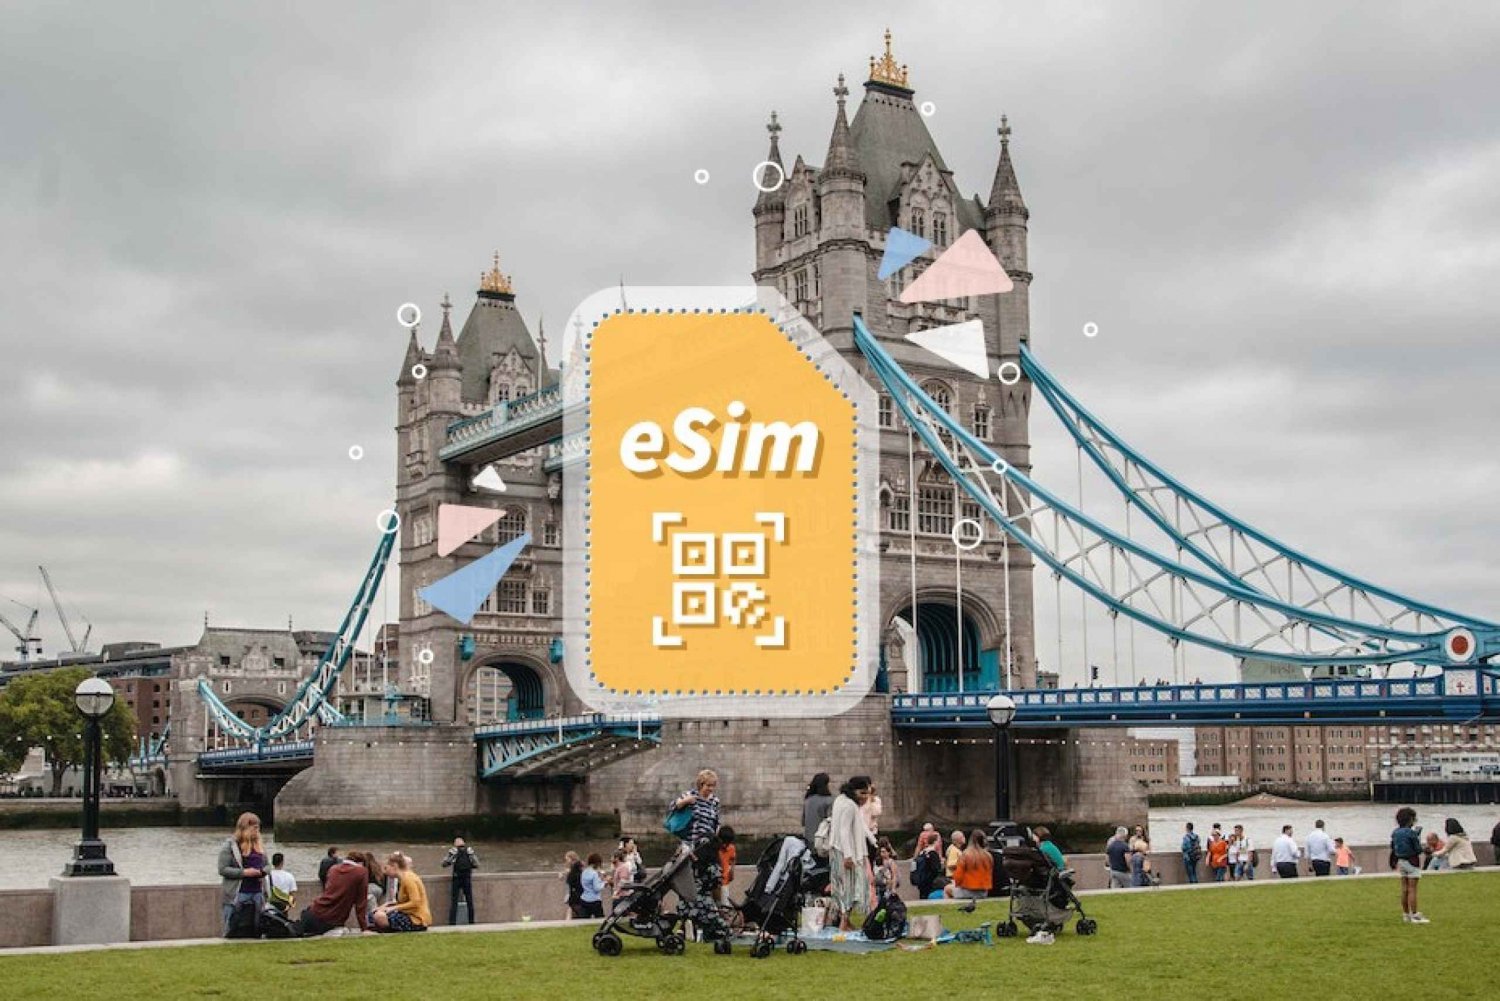 Storbritannien/Europa: 5G eSim mobildataplan